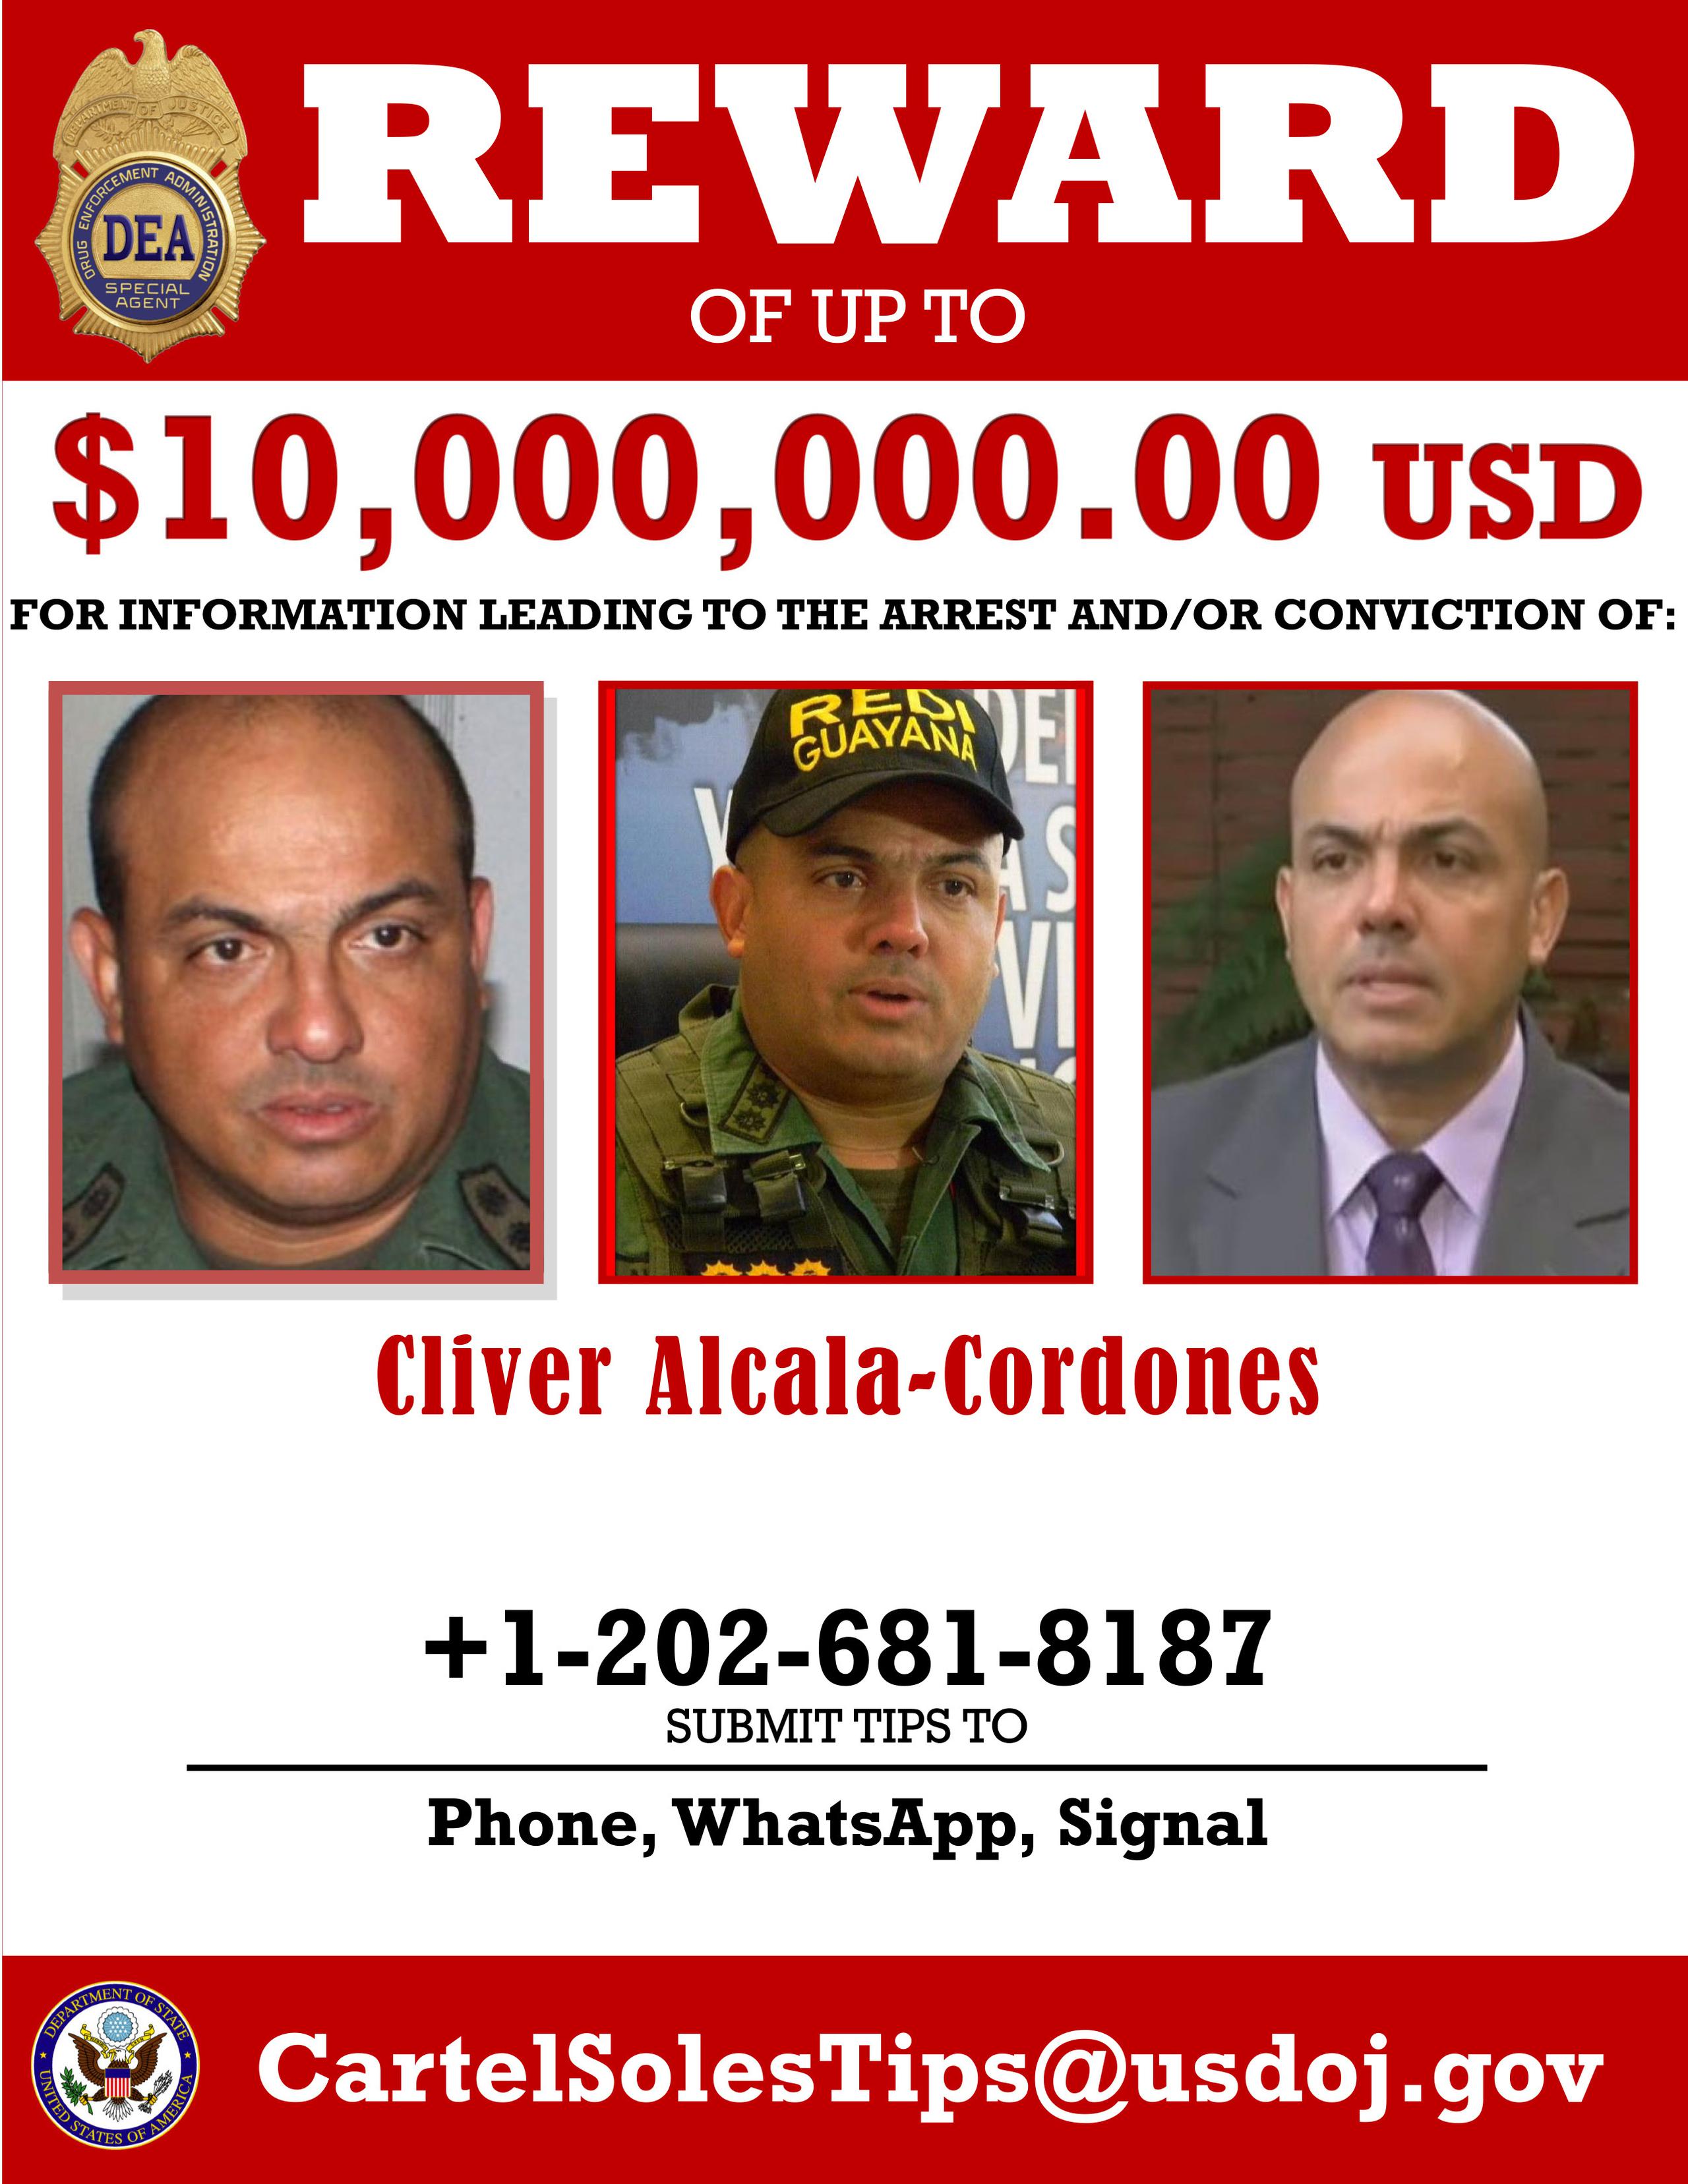 Una circular en la que se ofrece una recompensa de 10 millones de dólares por información que conduzca a la captura o condena del general retirado venezolano Cliver Alcalá Cordones